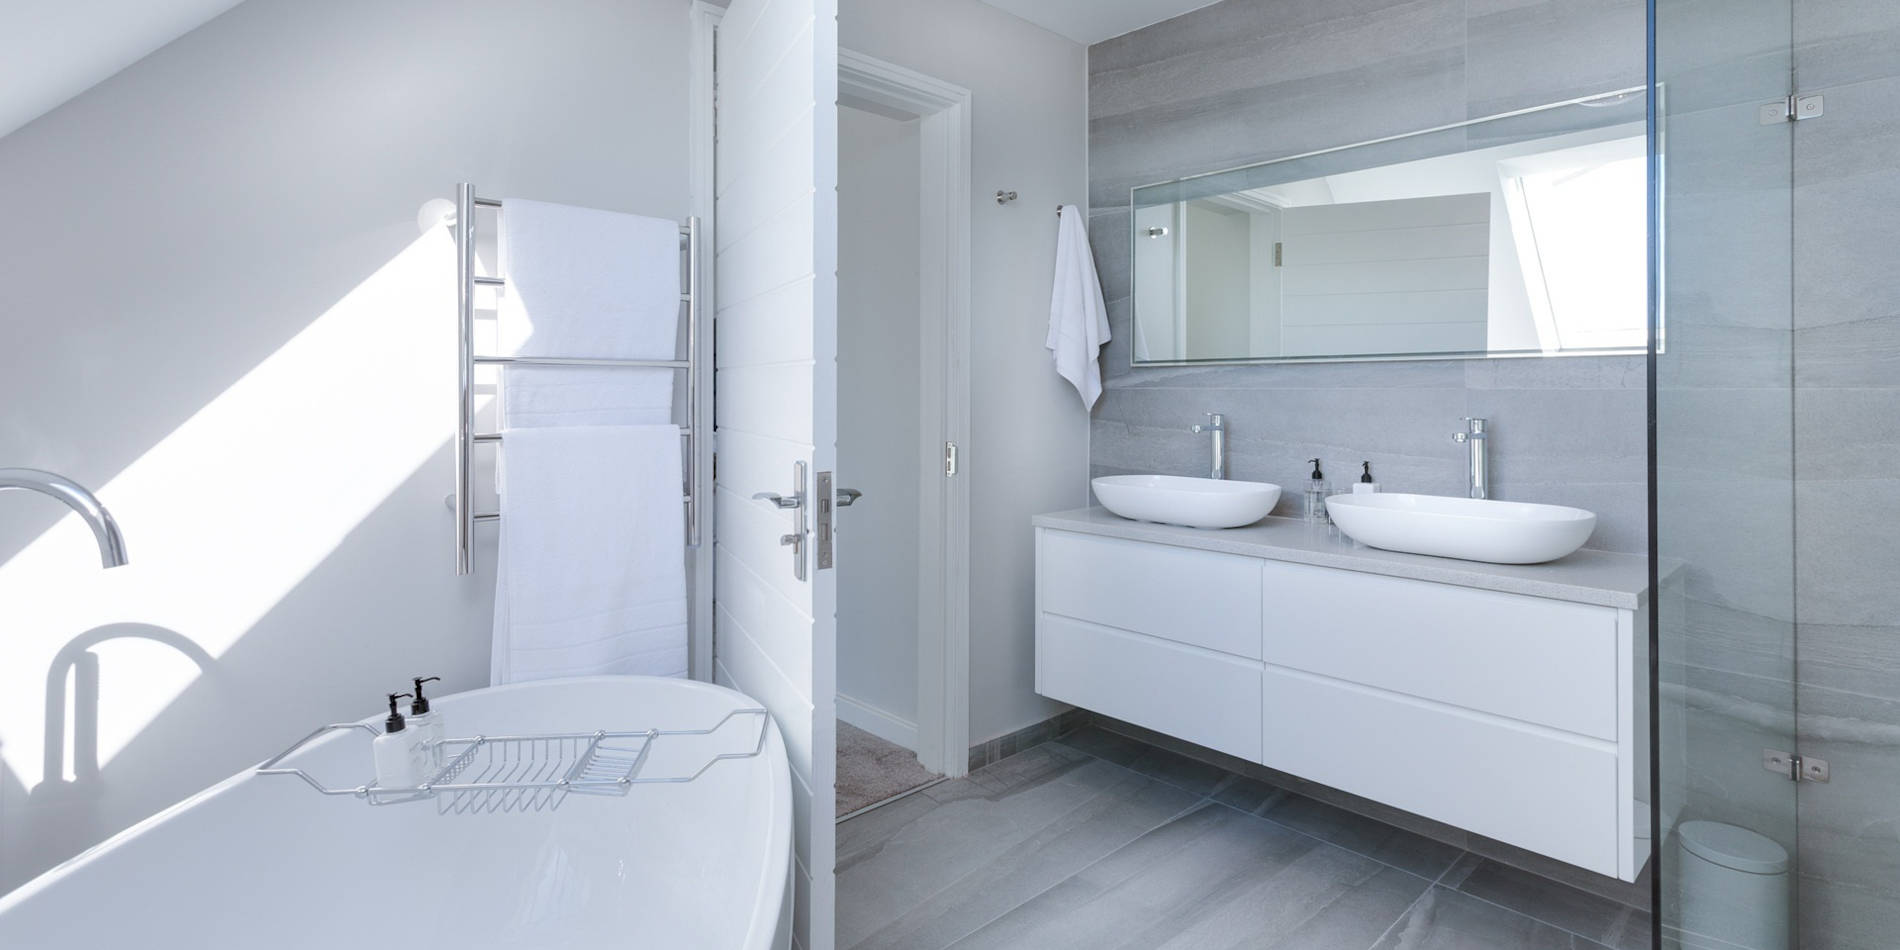 Comment adopter le style minimaliste dans votre salle de bain ?